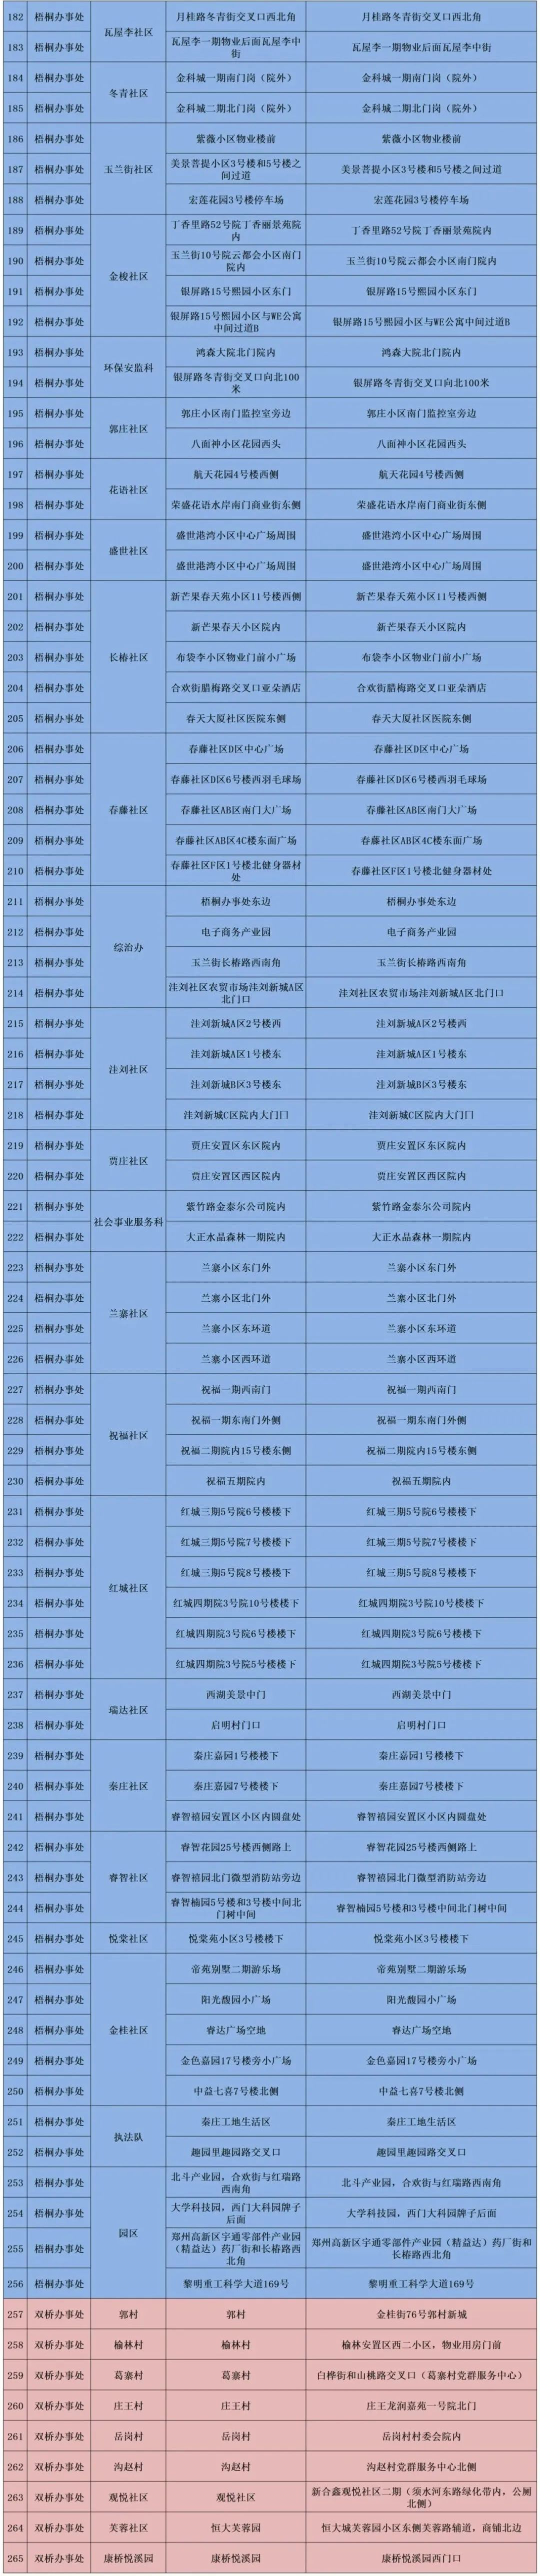 郑州高新区7月18日继续开展全员核酸检测